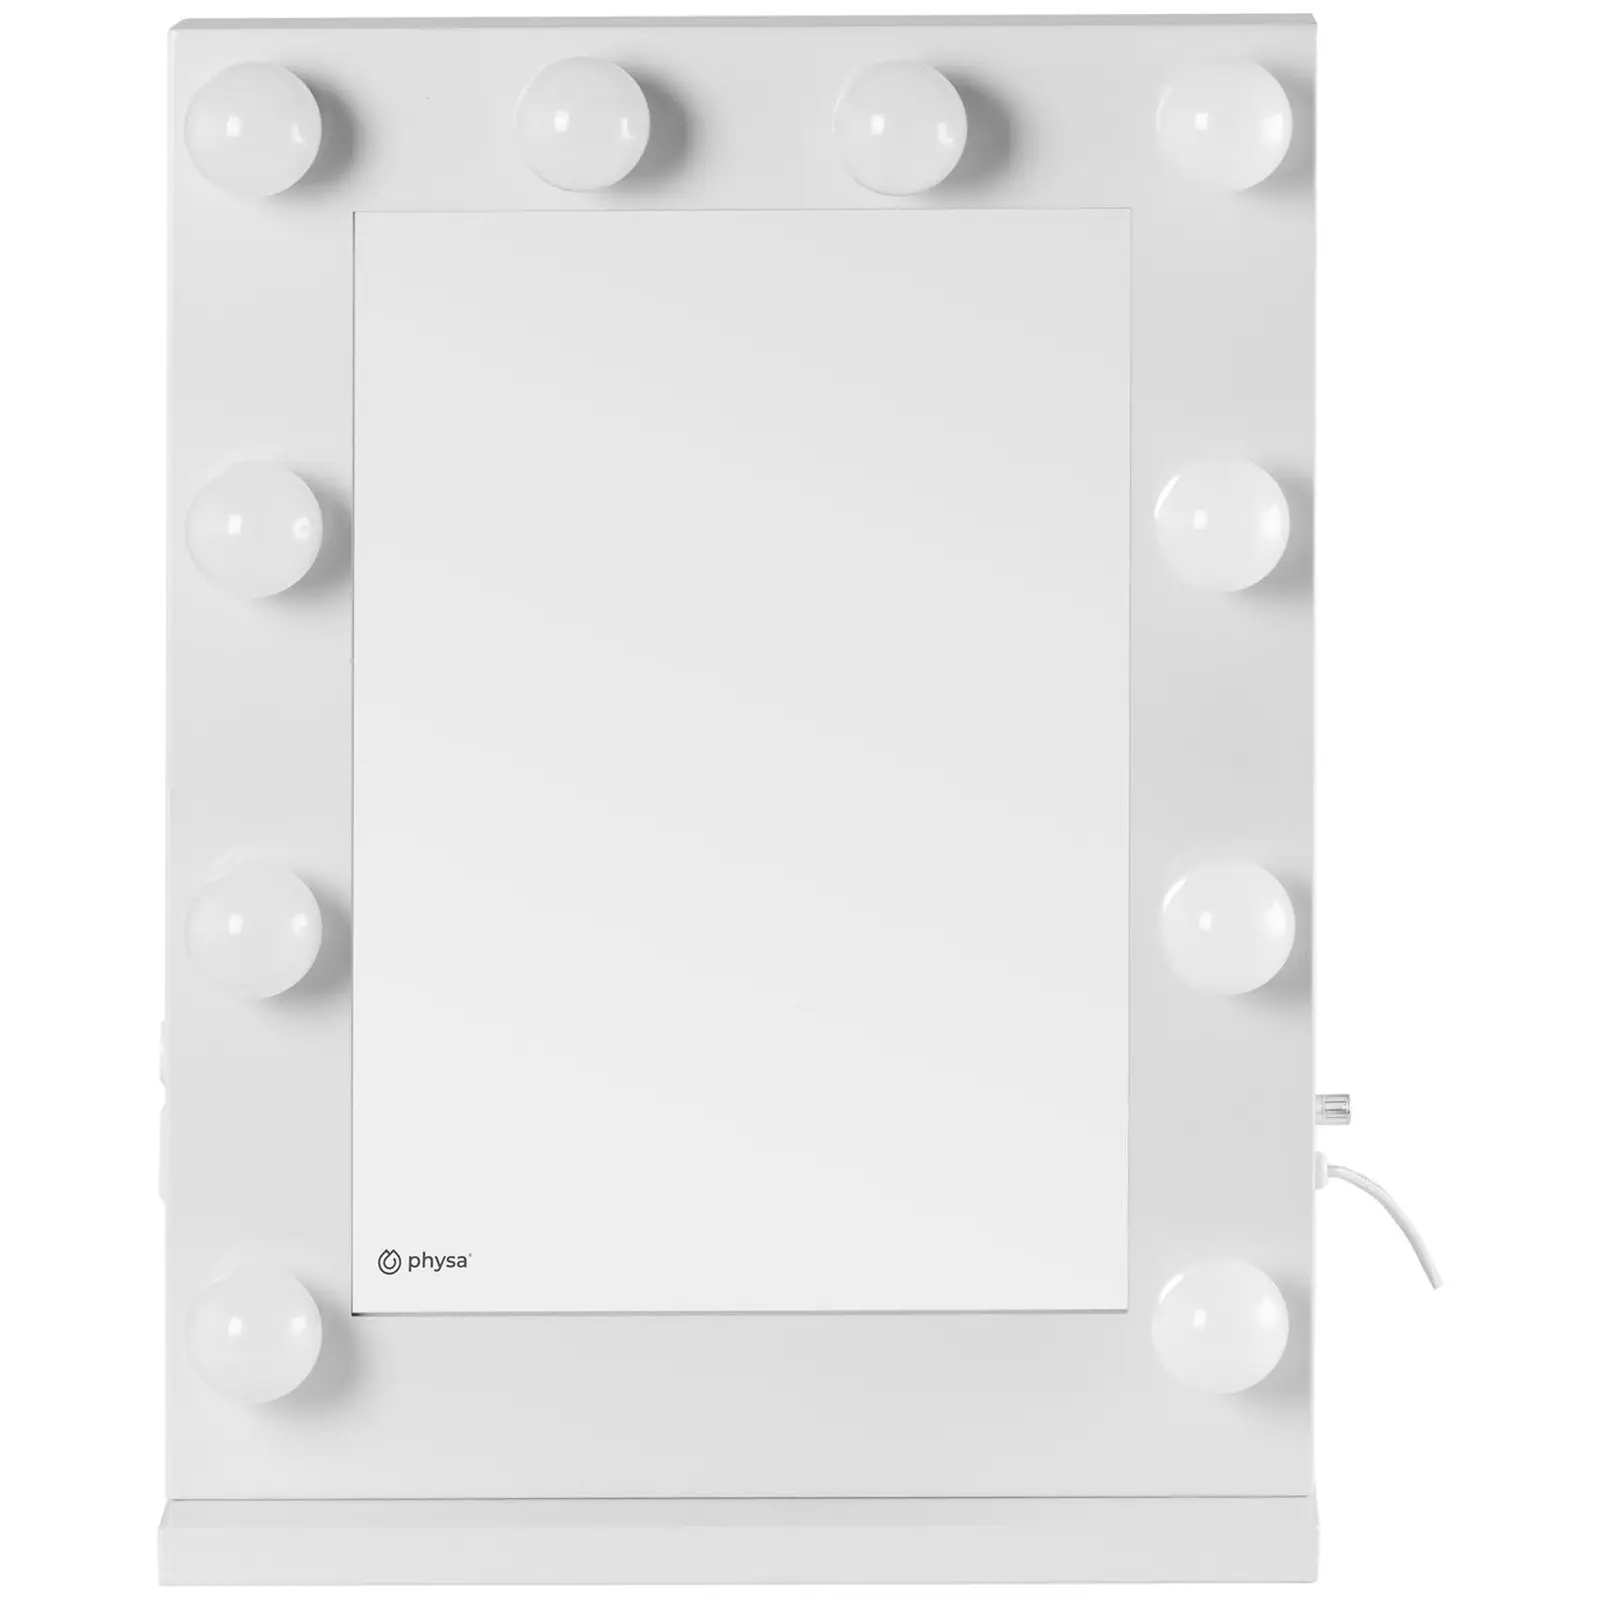 Hollywoodské zrcadlo - bílé - 10 LED diod - hranaté